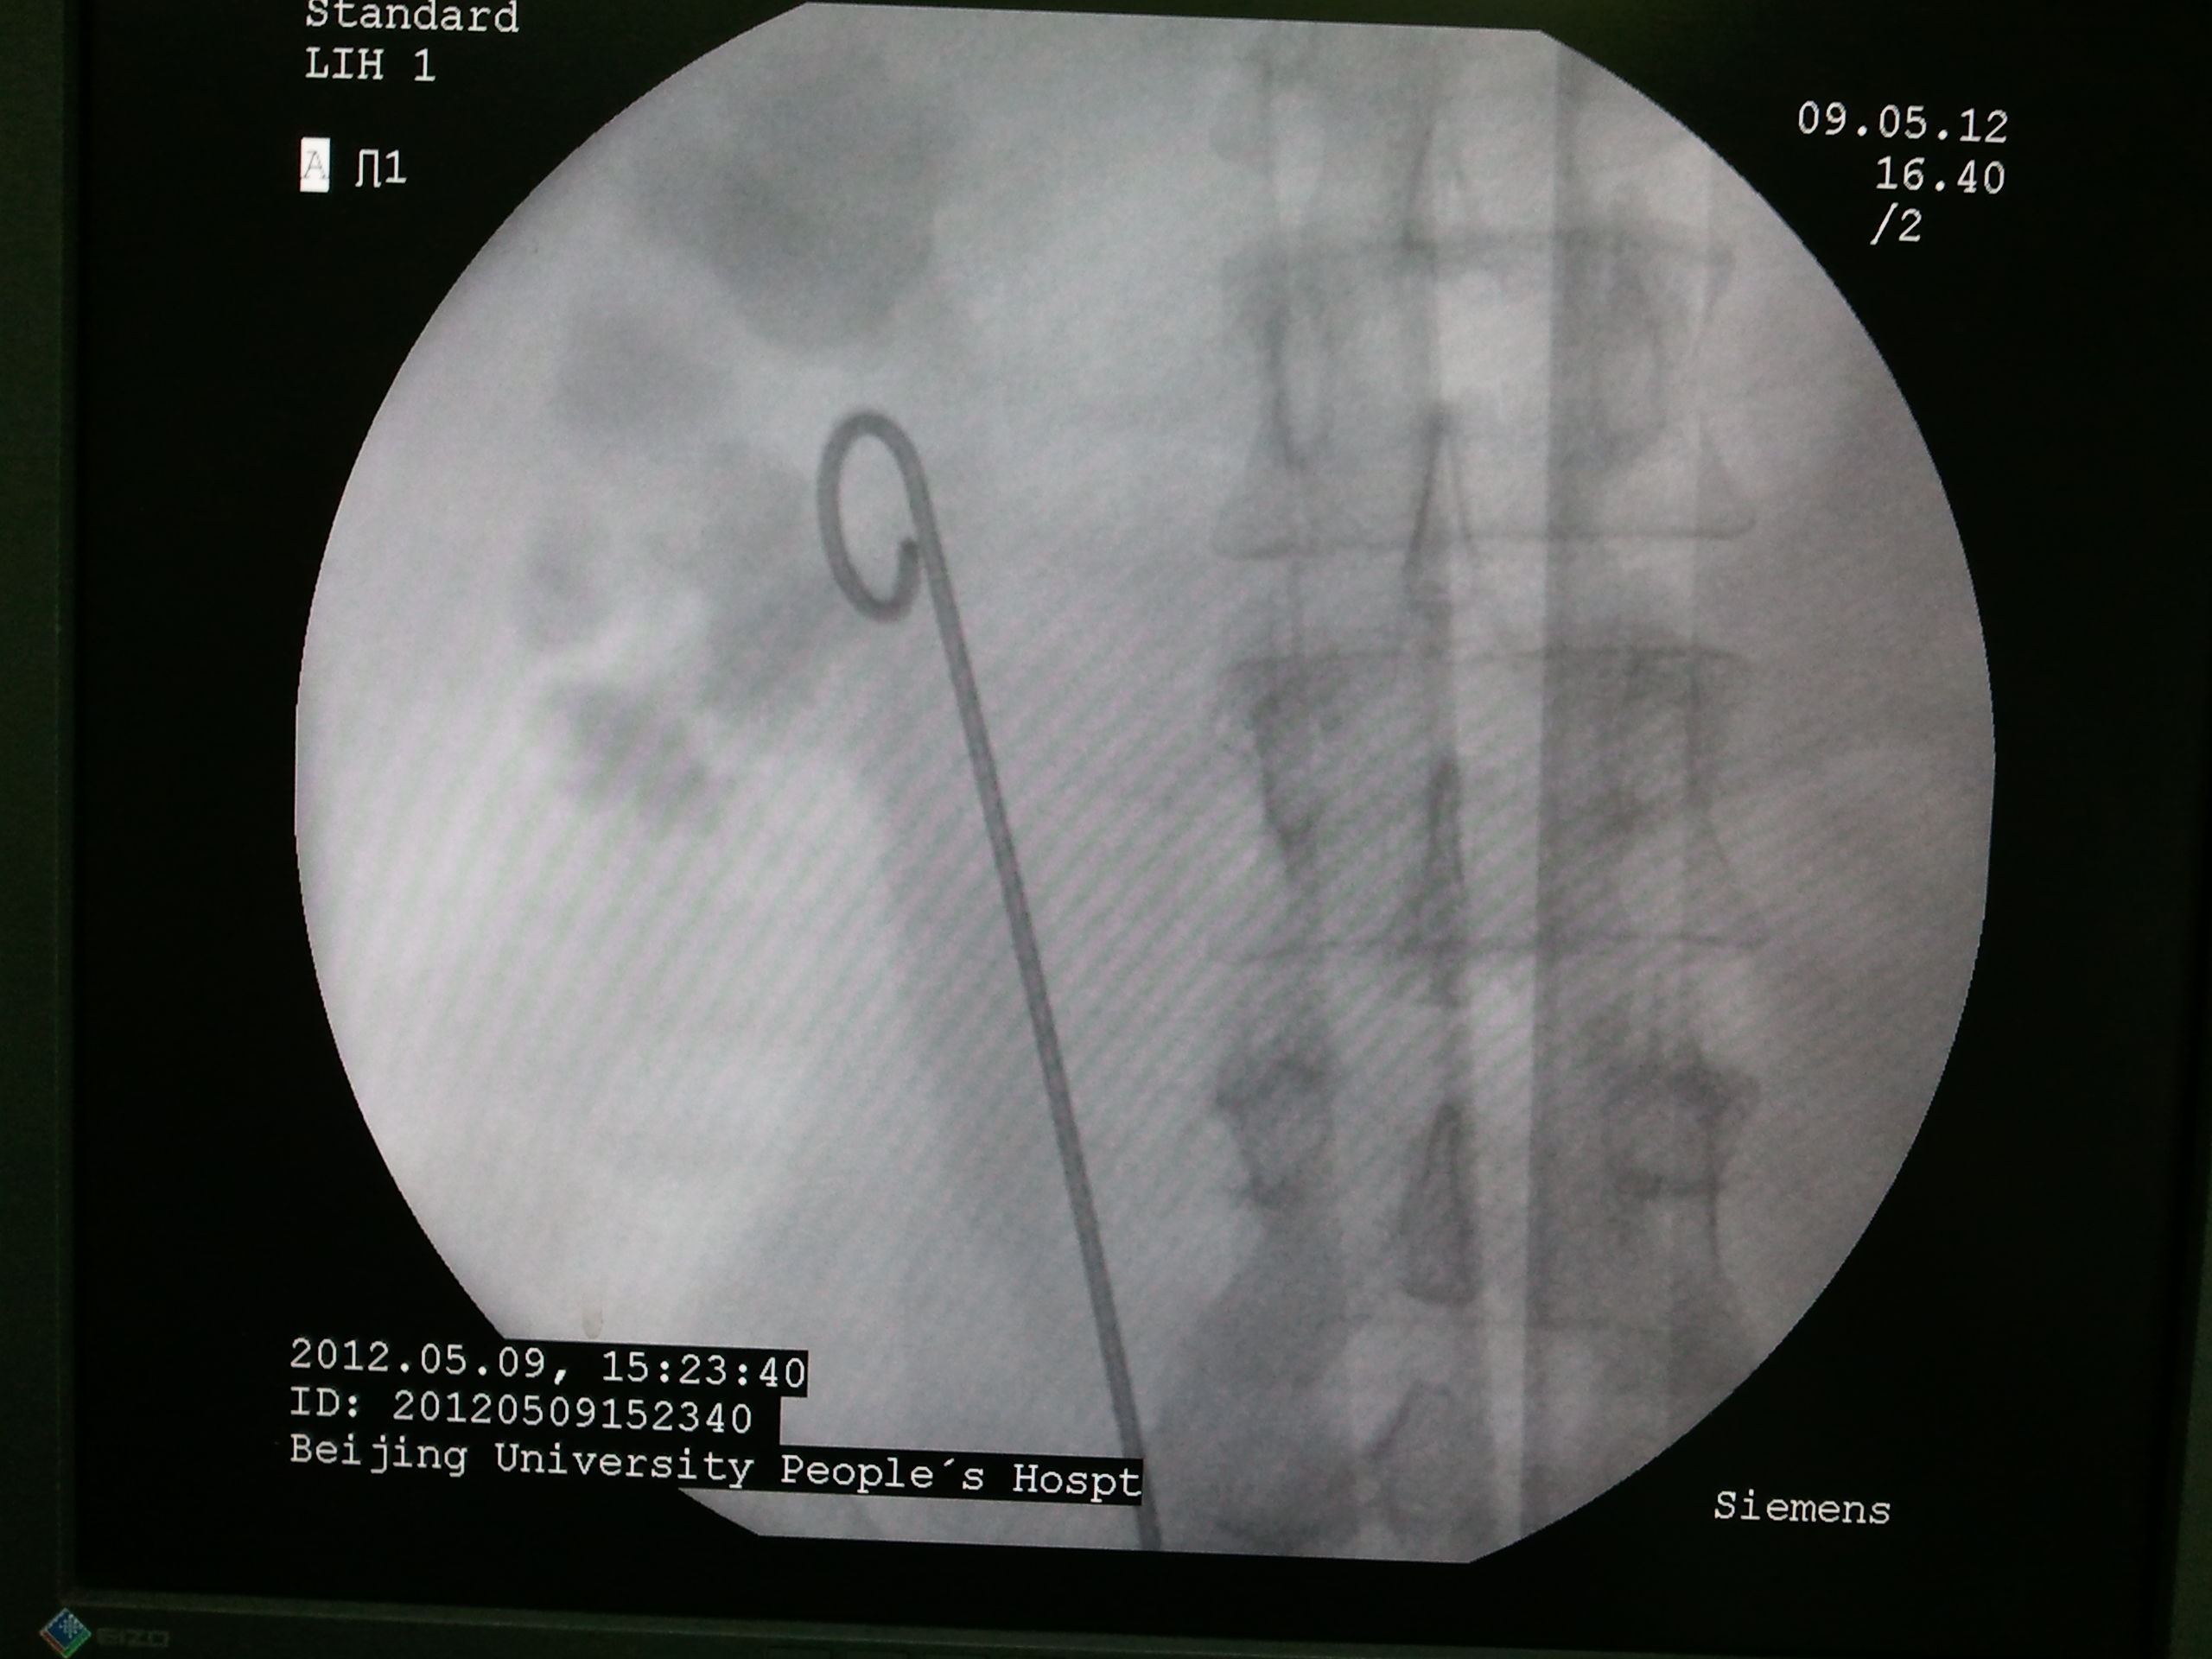 肾结石手术支架图片图片